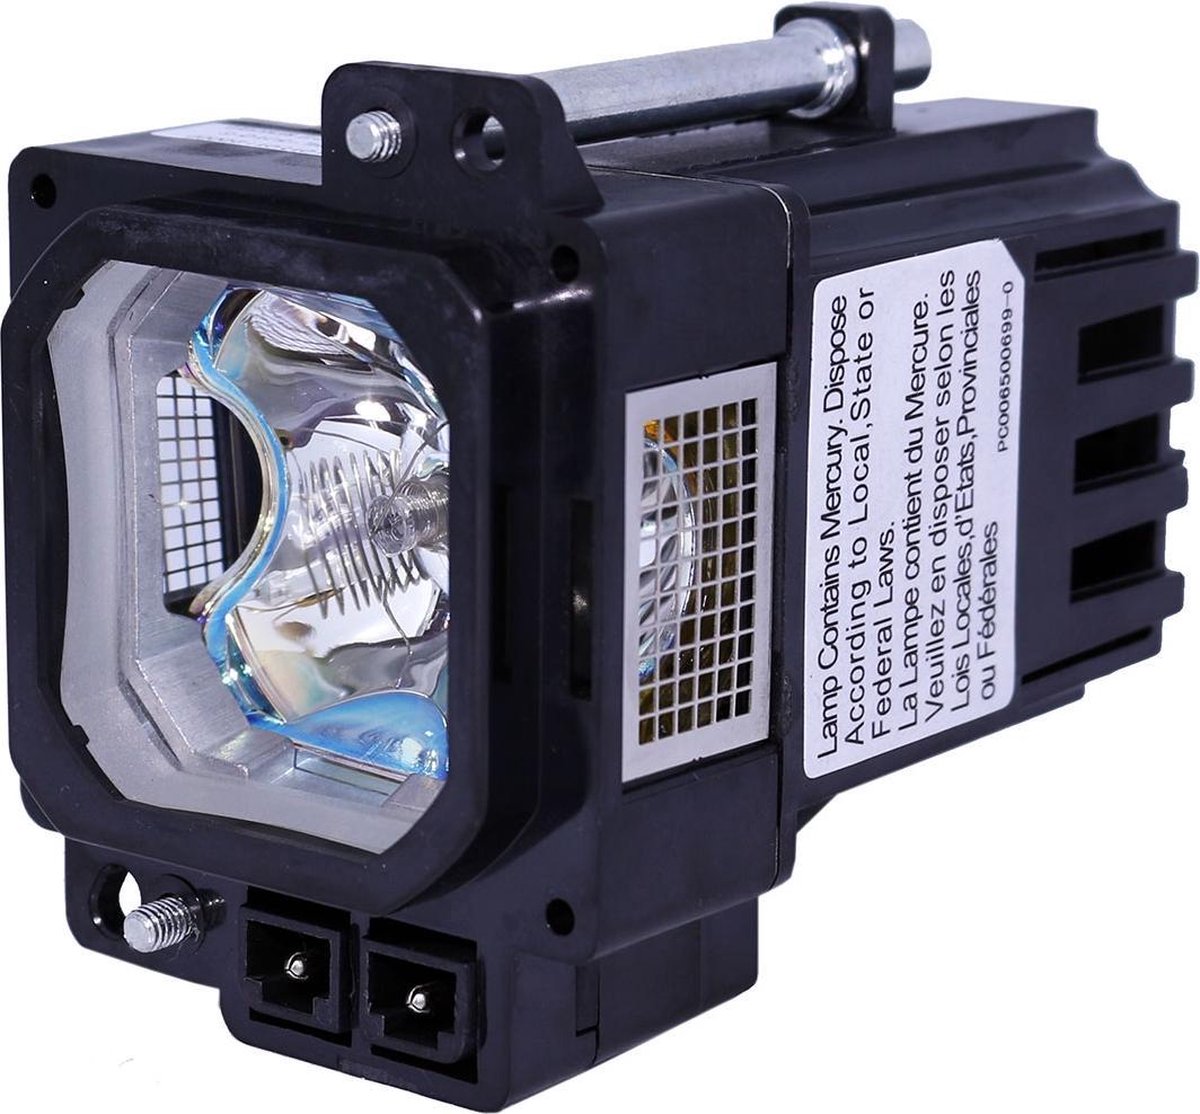 Beamerlamp geschikt voor de JVC DLA-HD950 beamer, lamp code BHL5010-S. Bevat originele UHP lamp, prestaties gelijk aan origineel. - QualityLamp